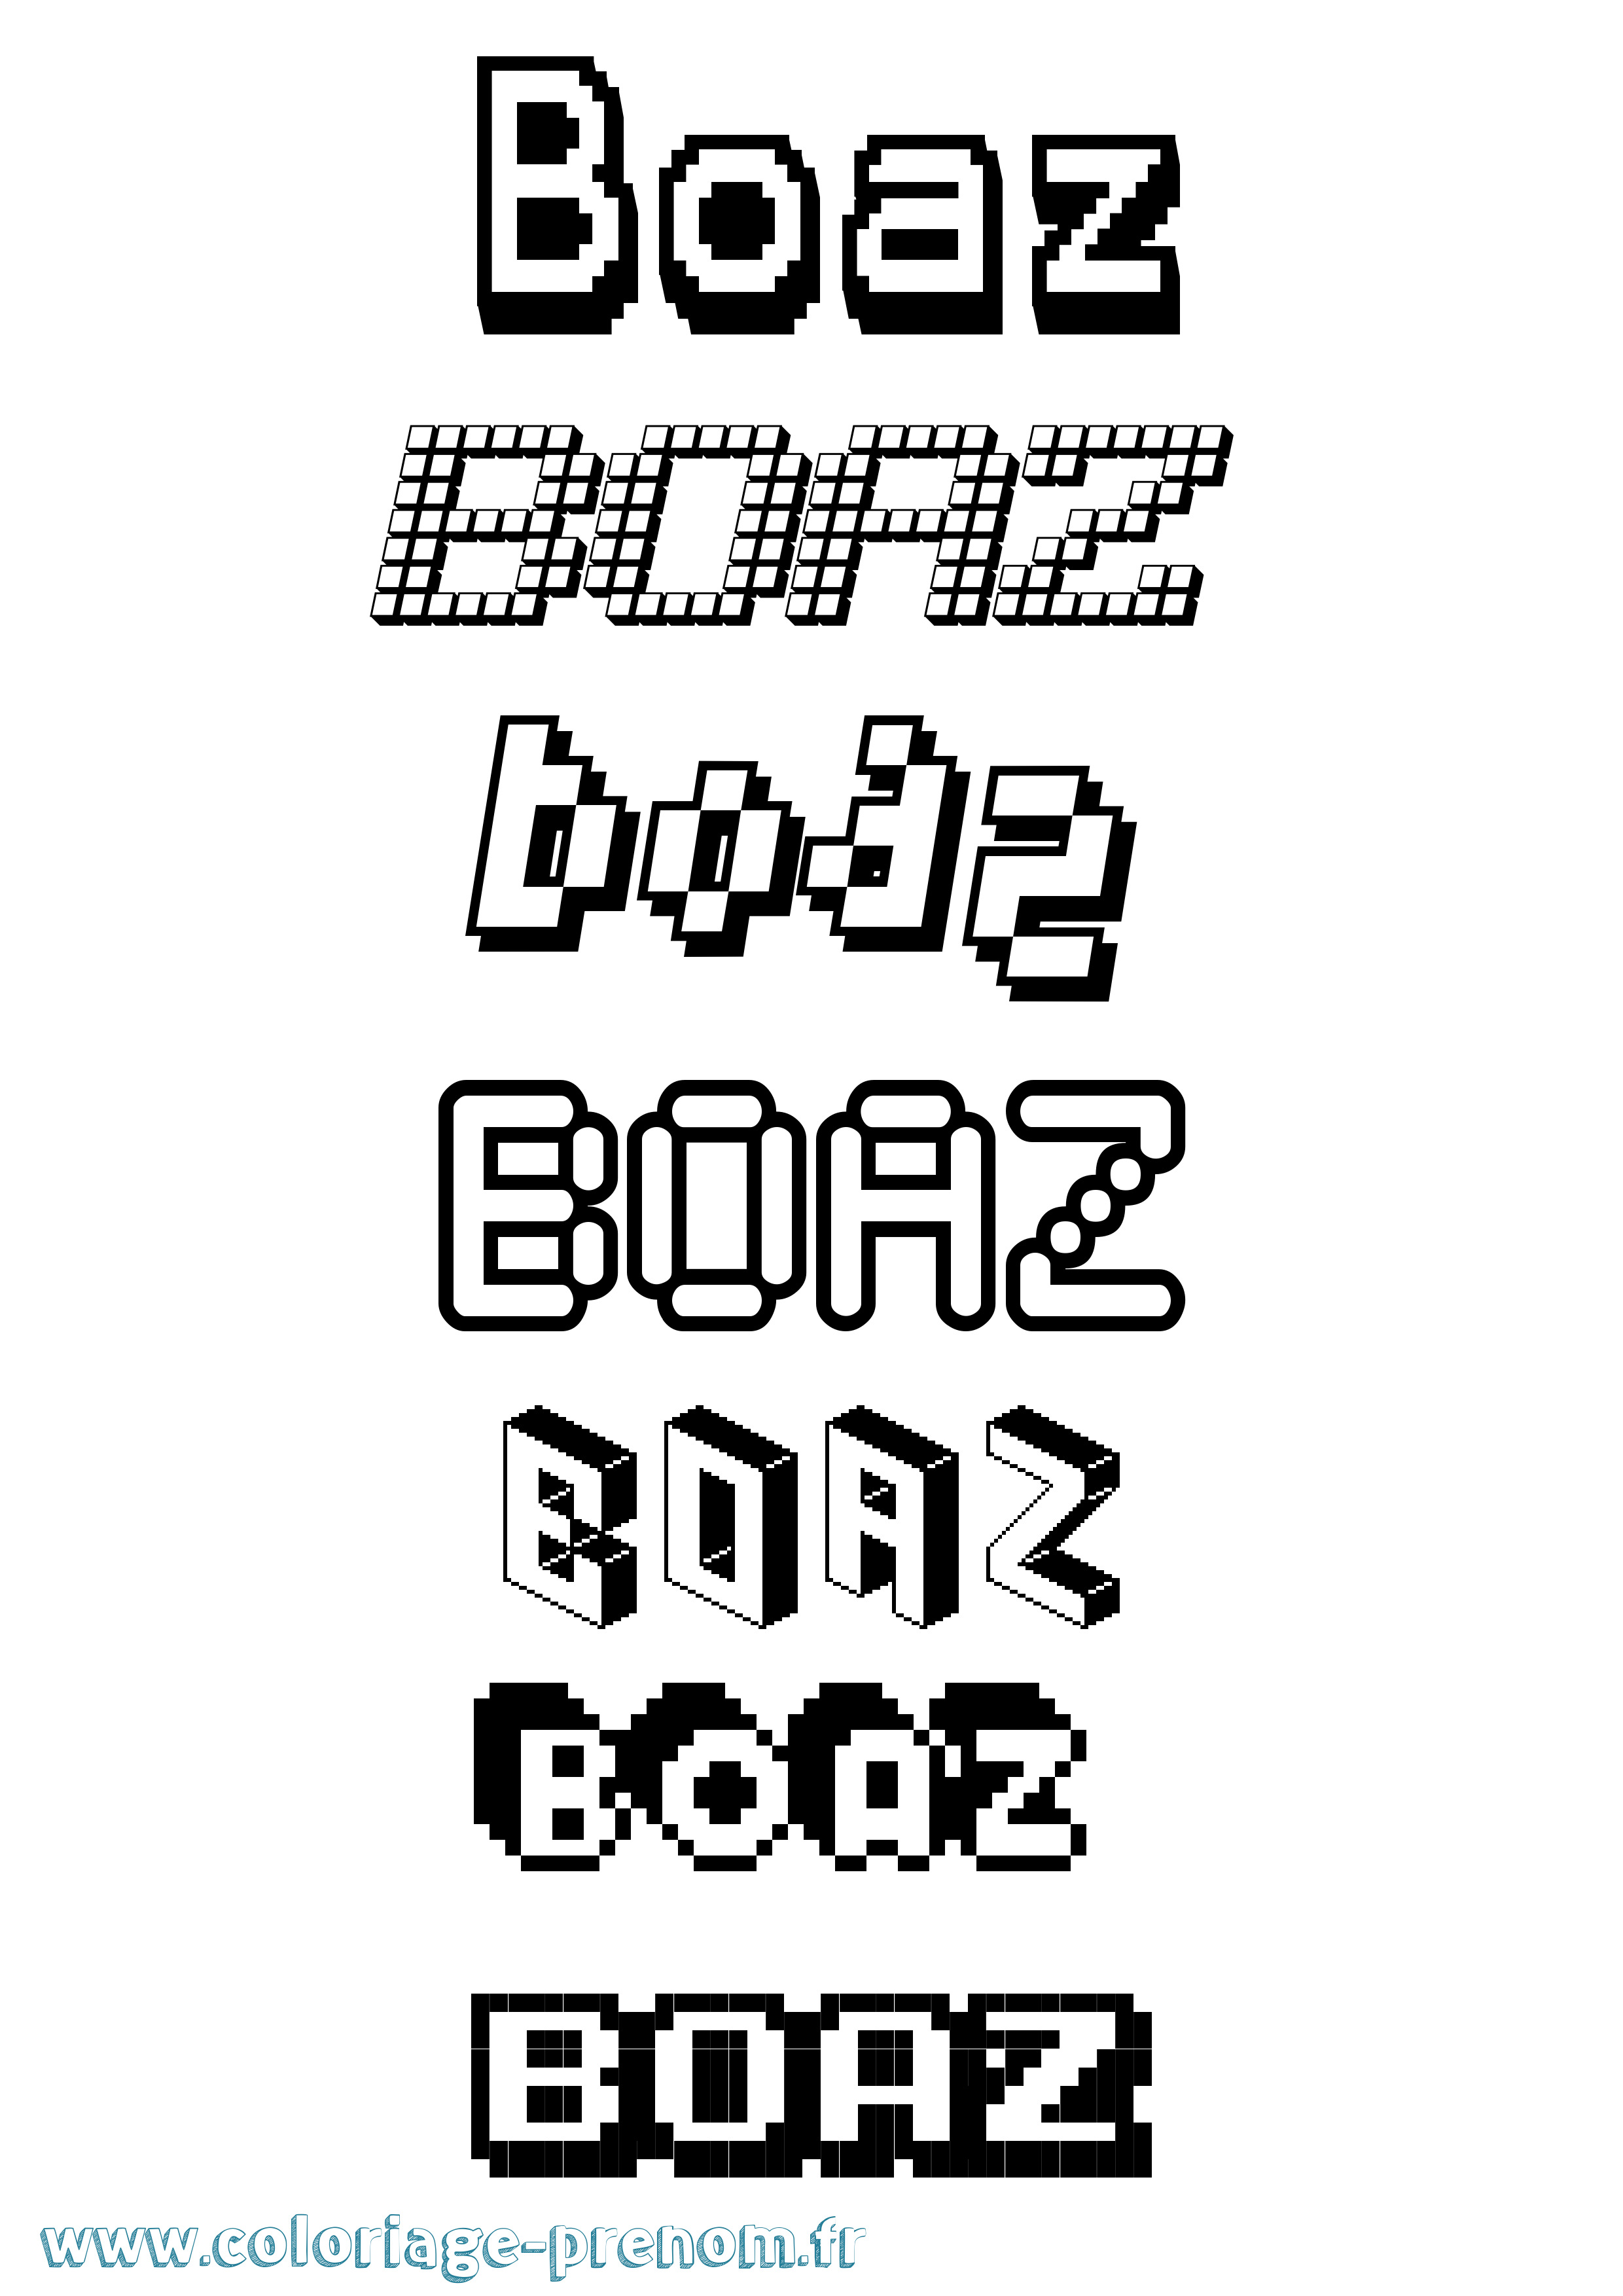 Coloriage prénom Boaz Pixel